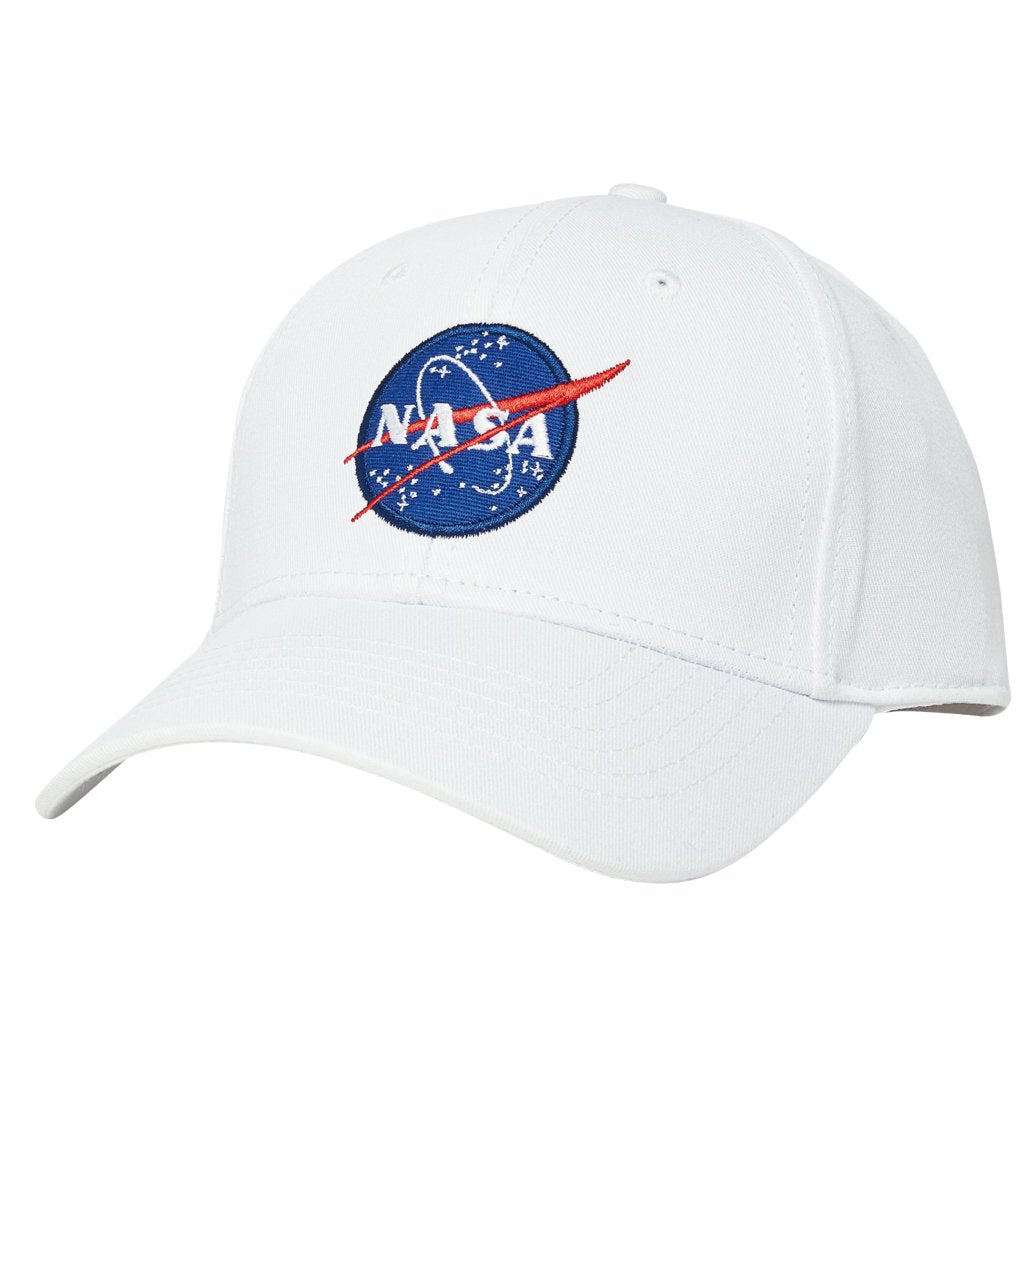 GORRA NASA - BLANCA